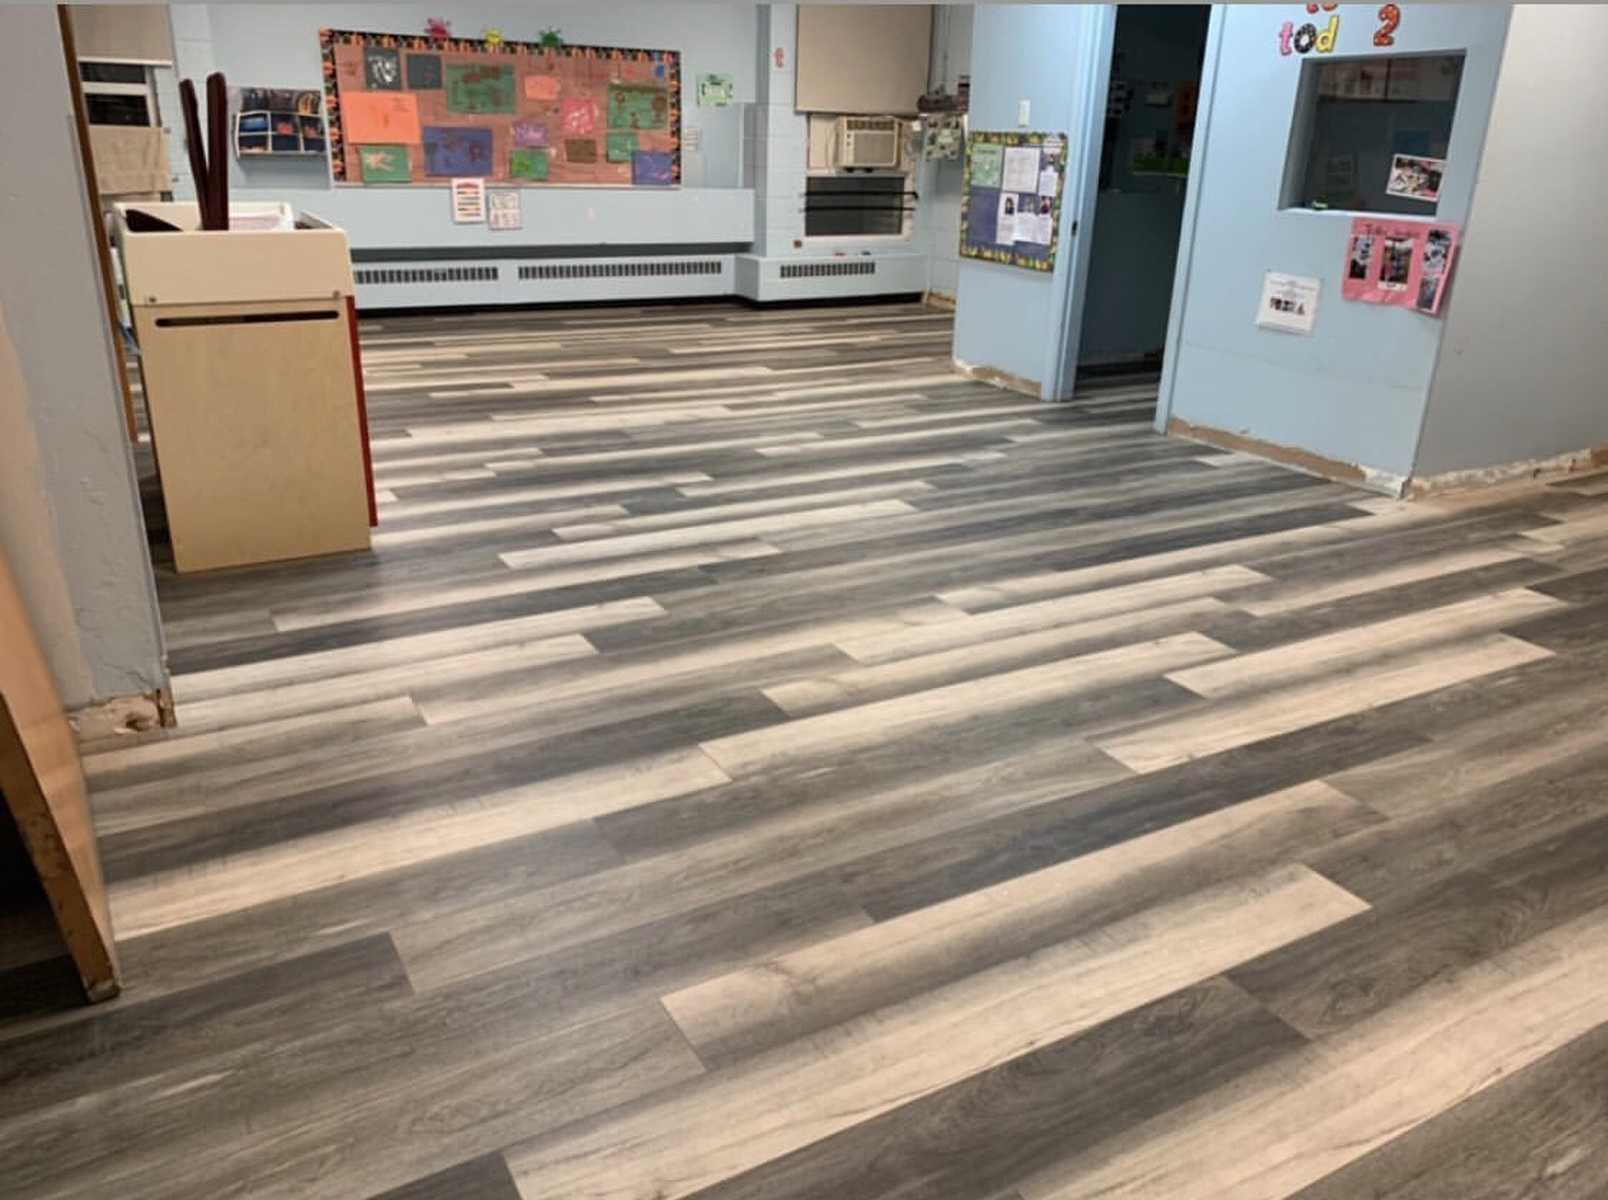 Childcare Center -Vinyl floor installation